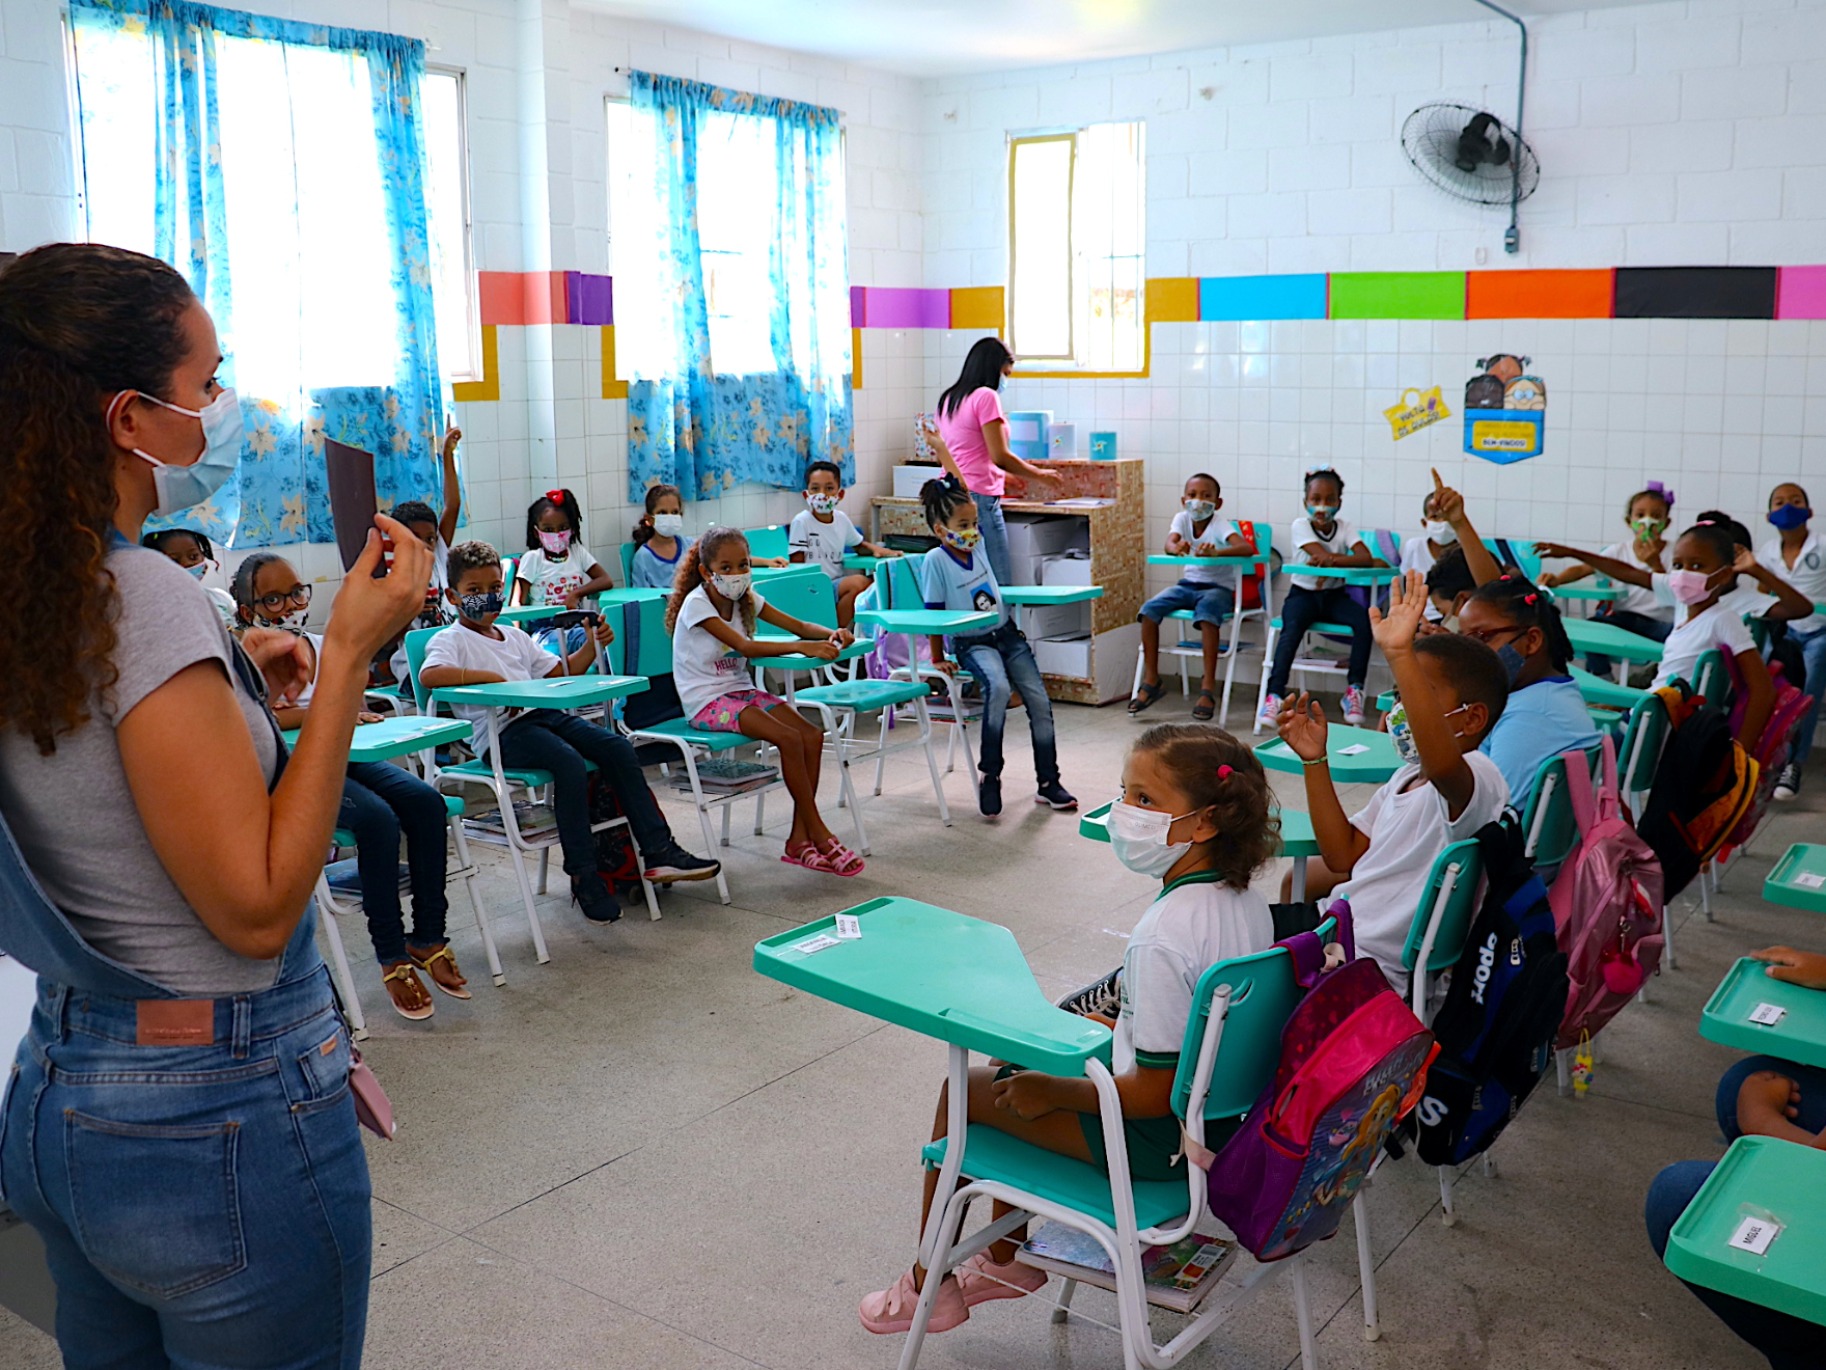 CESA - Centro Educacional Santo Antônio Amor em forma de Educação